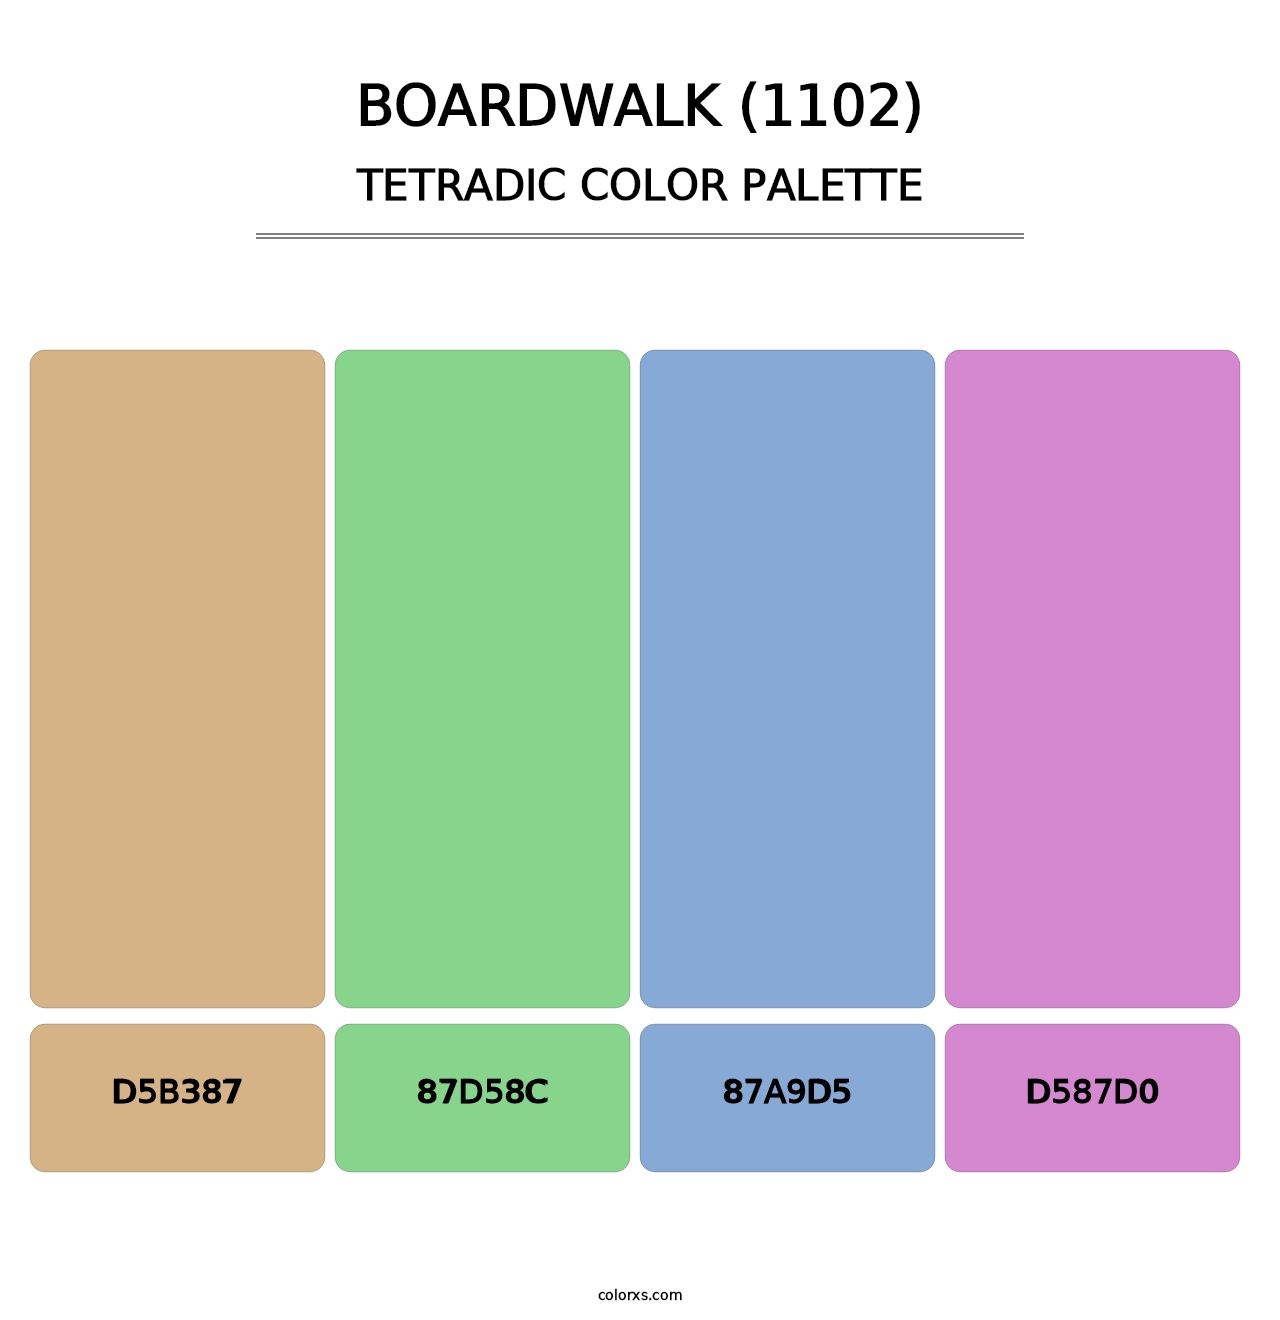 Boardwalk (1102) - Tetradic Color Palette